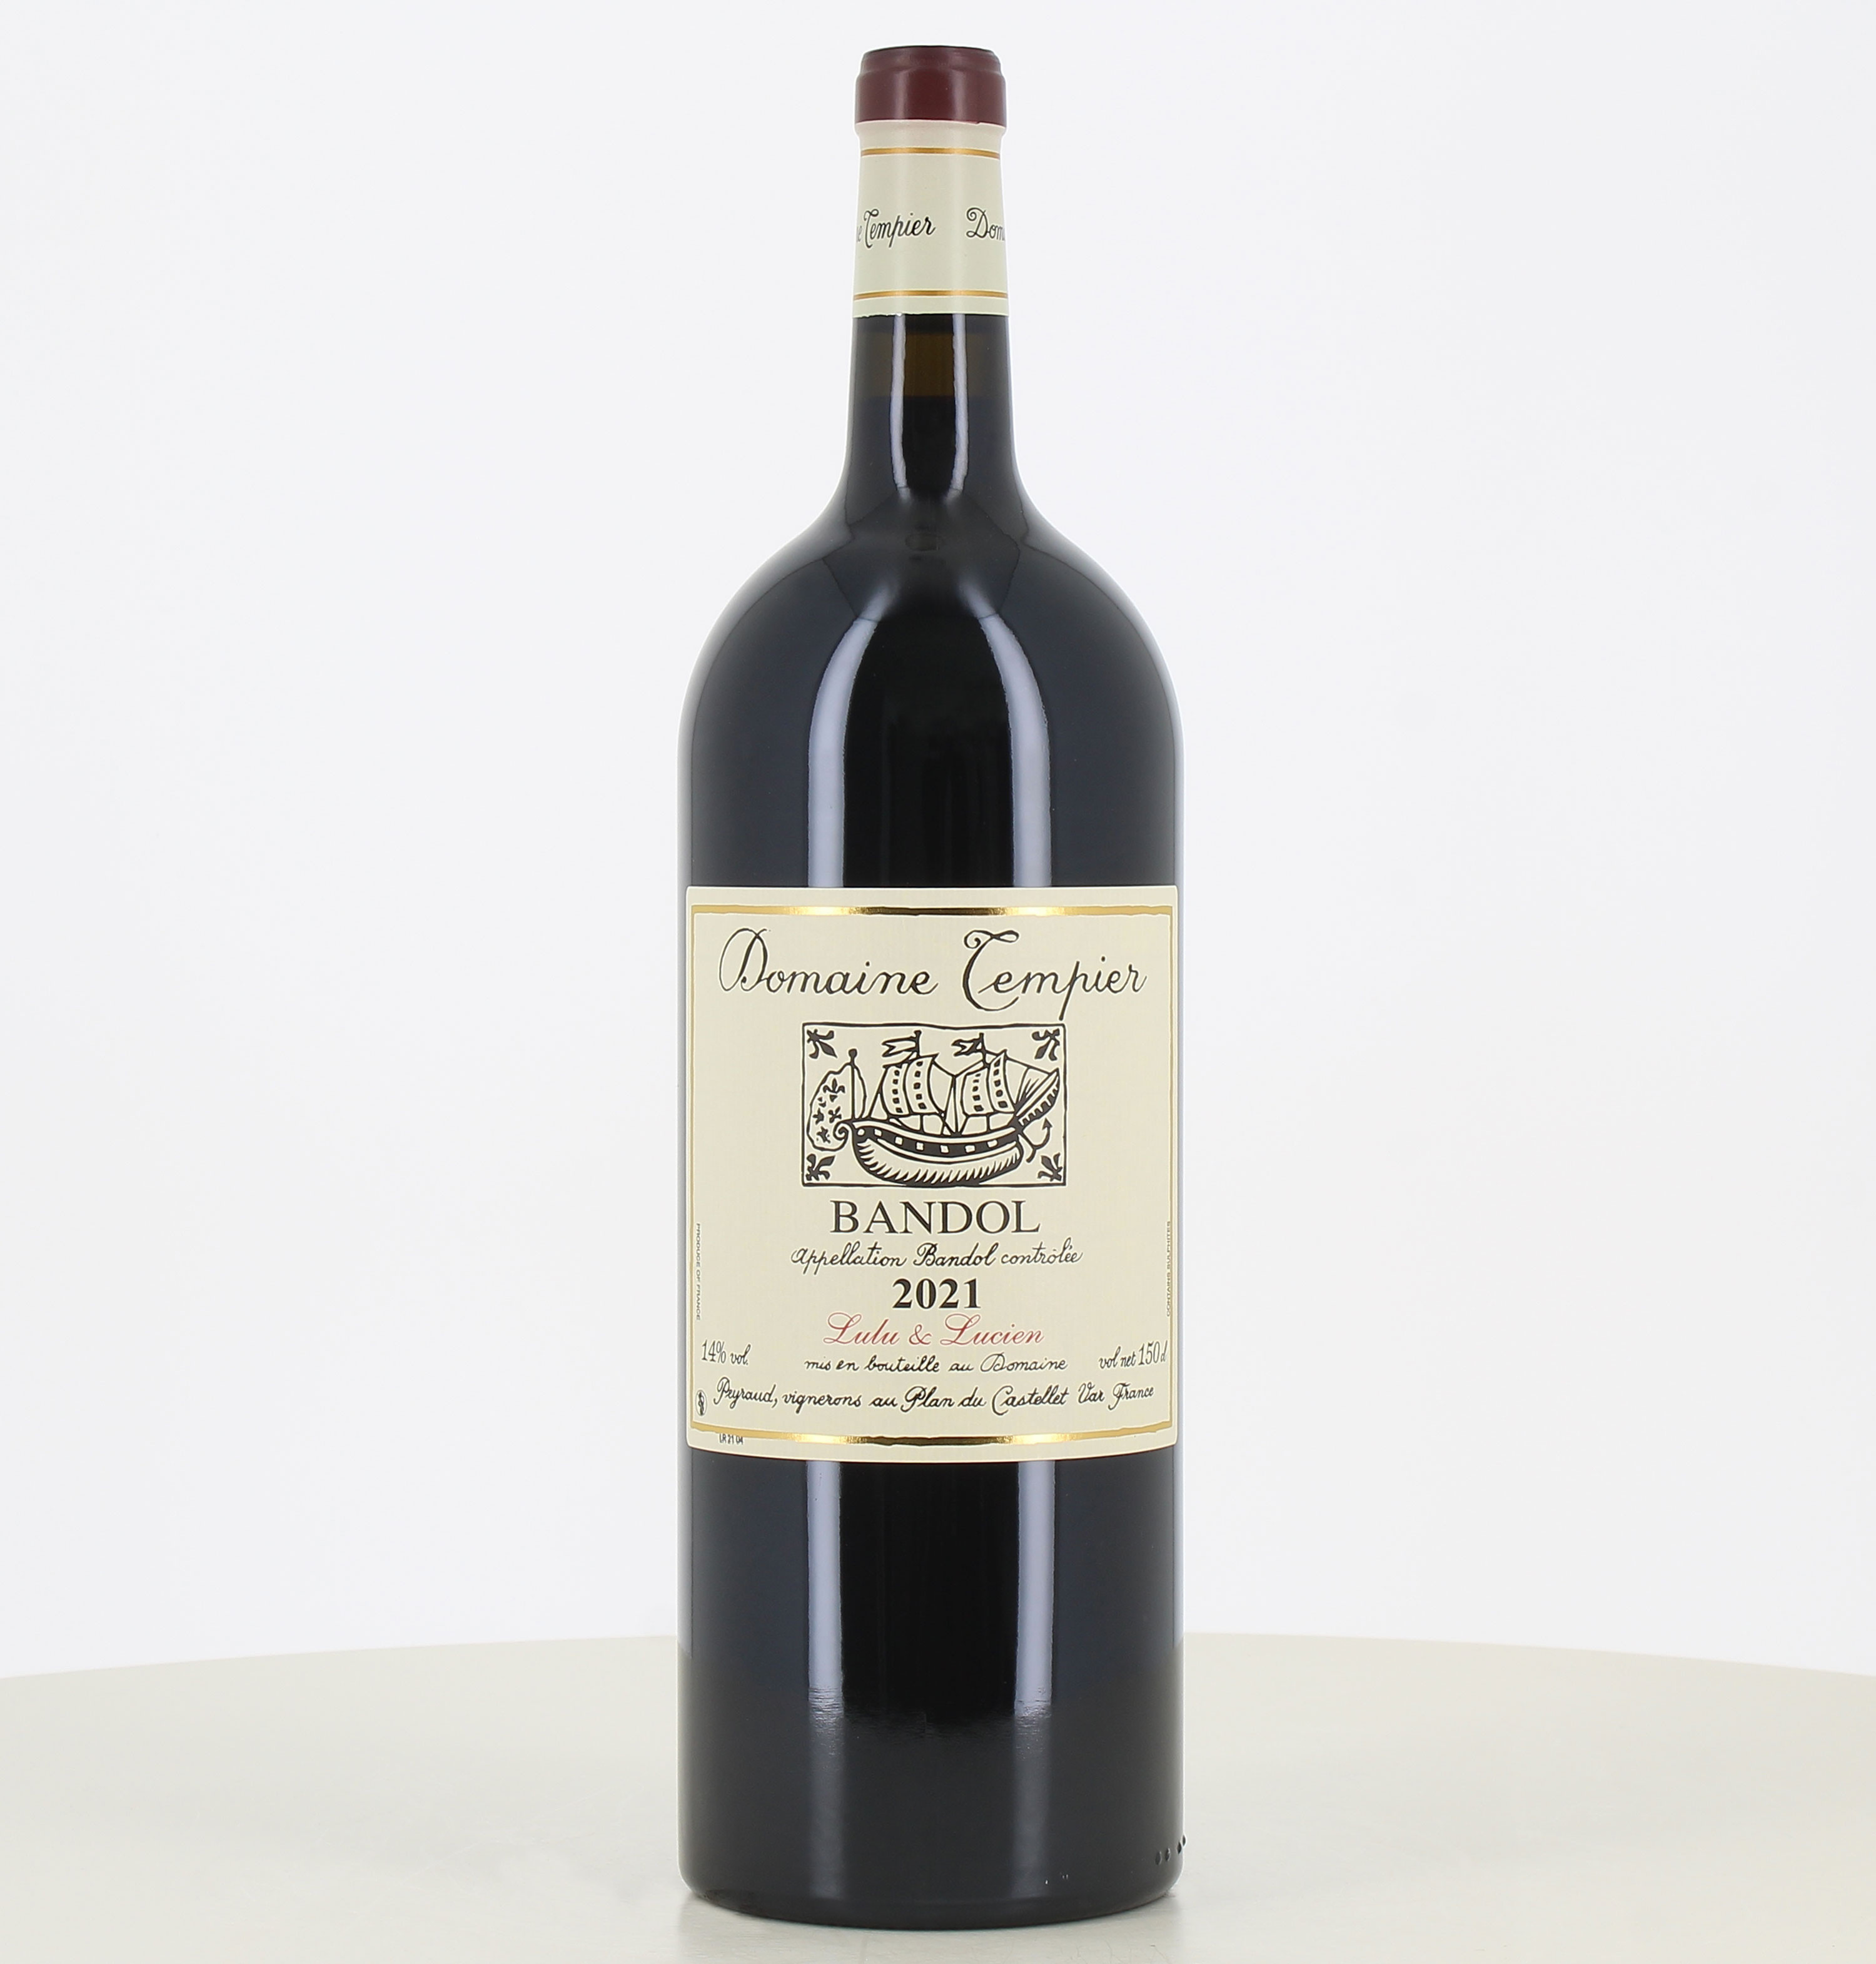 Magnum vino rosso Bandol Lulu & Lucien Domaine Tempier 2021 